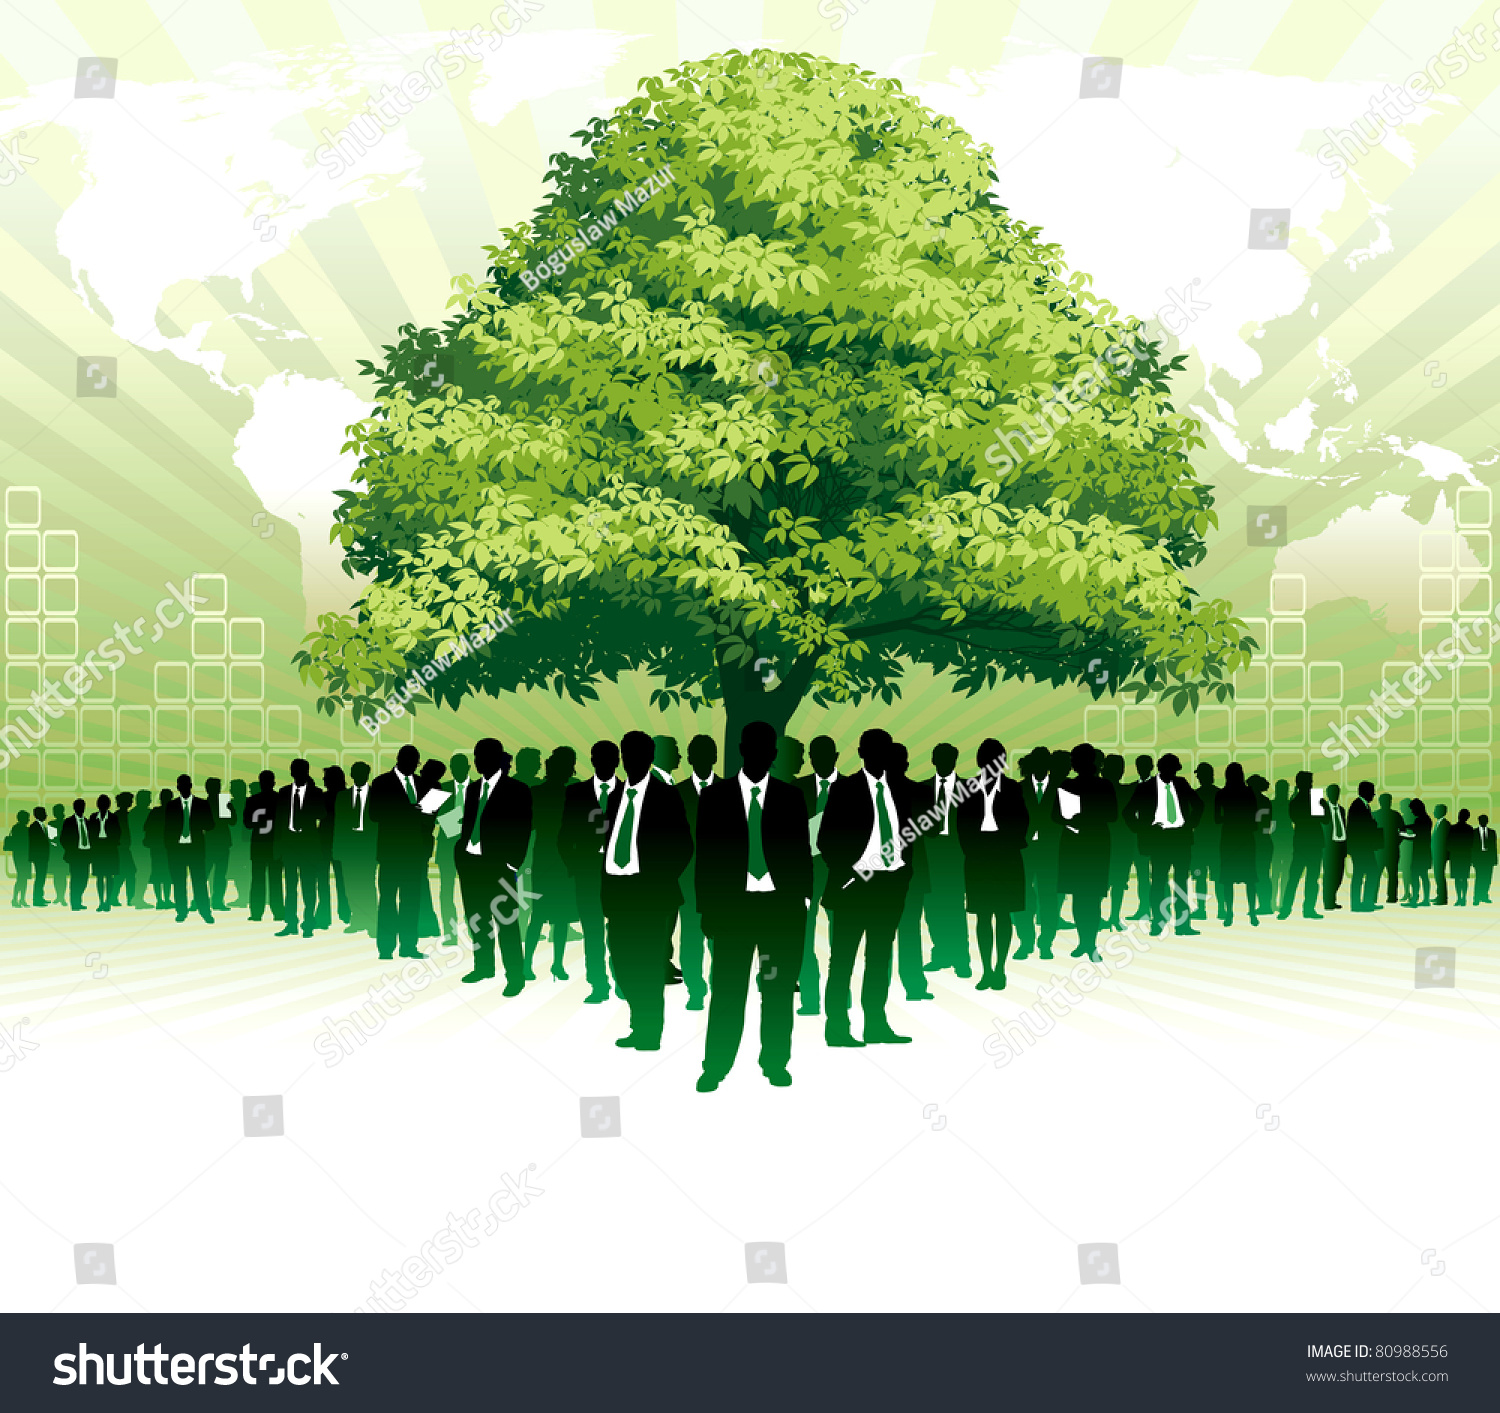 Семь зеленых людей. Иллюстрации зелёные бизнес. Экологический пиар. Экологический PR. Бизнес зеленый цвет.